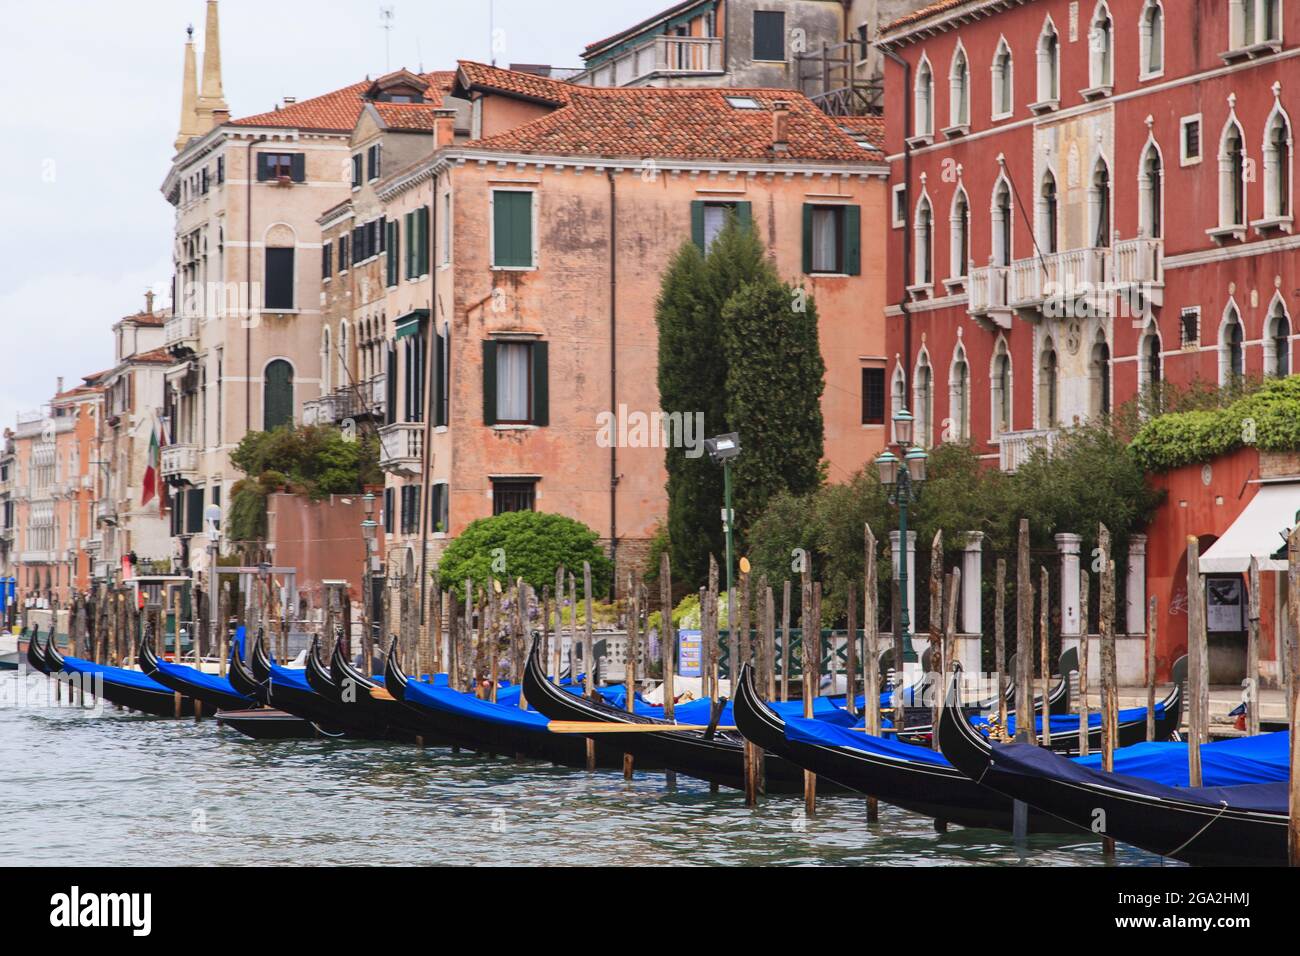 Überdachte Gondeln, die am Kanal vor alten Steingebäuden festgemacht sind; Venedig, Venedig, Italien Stockfoto